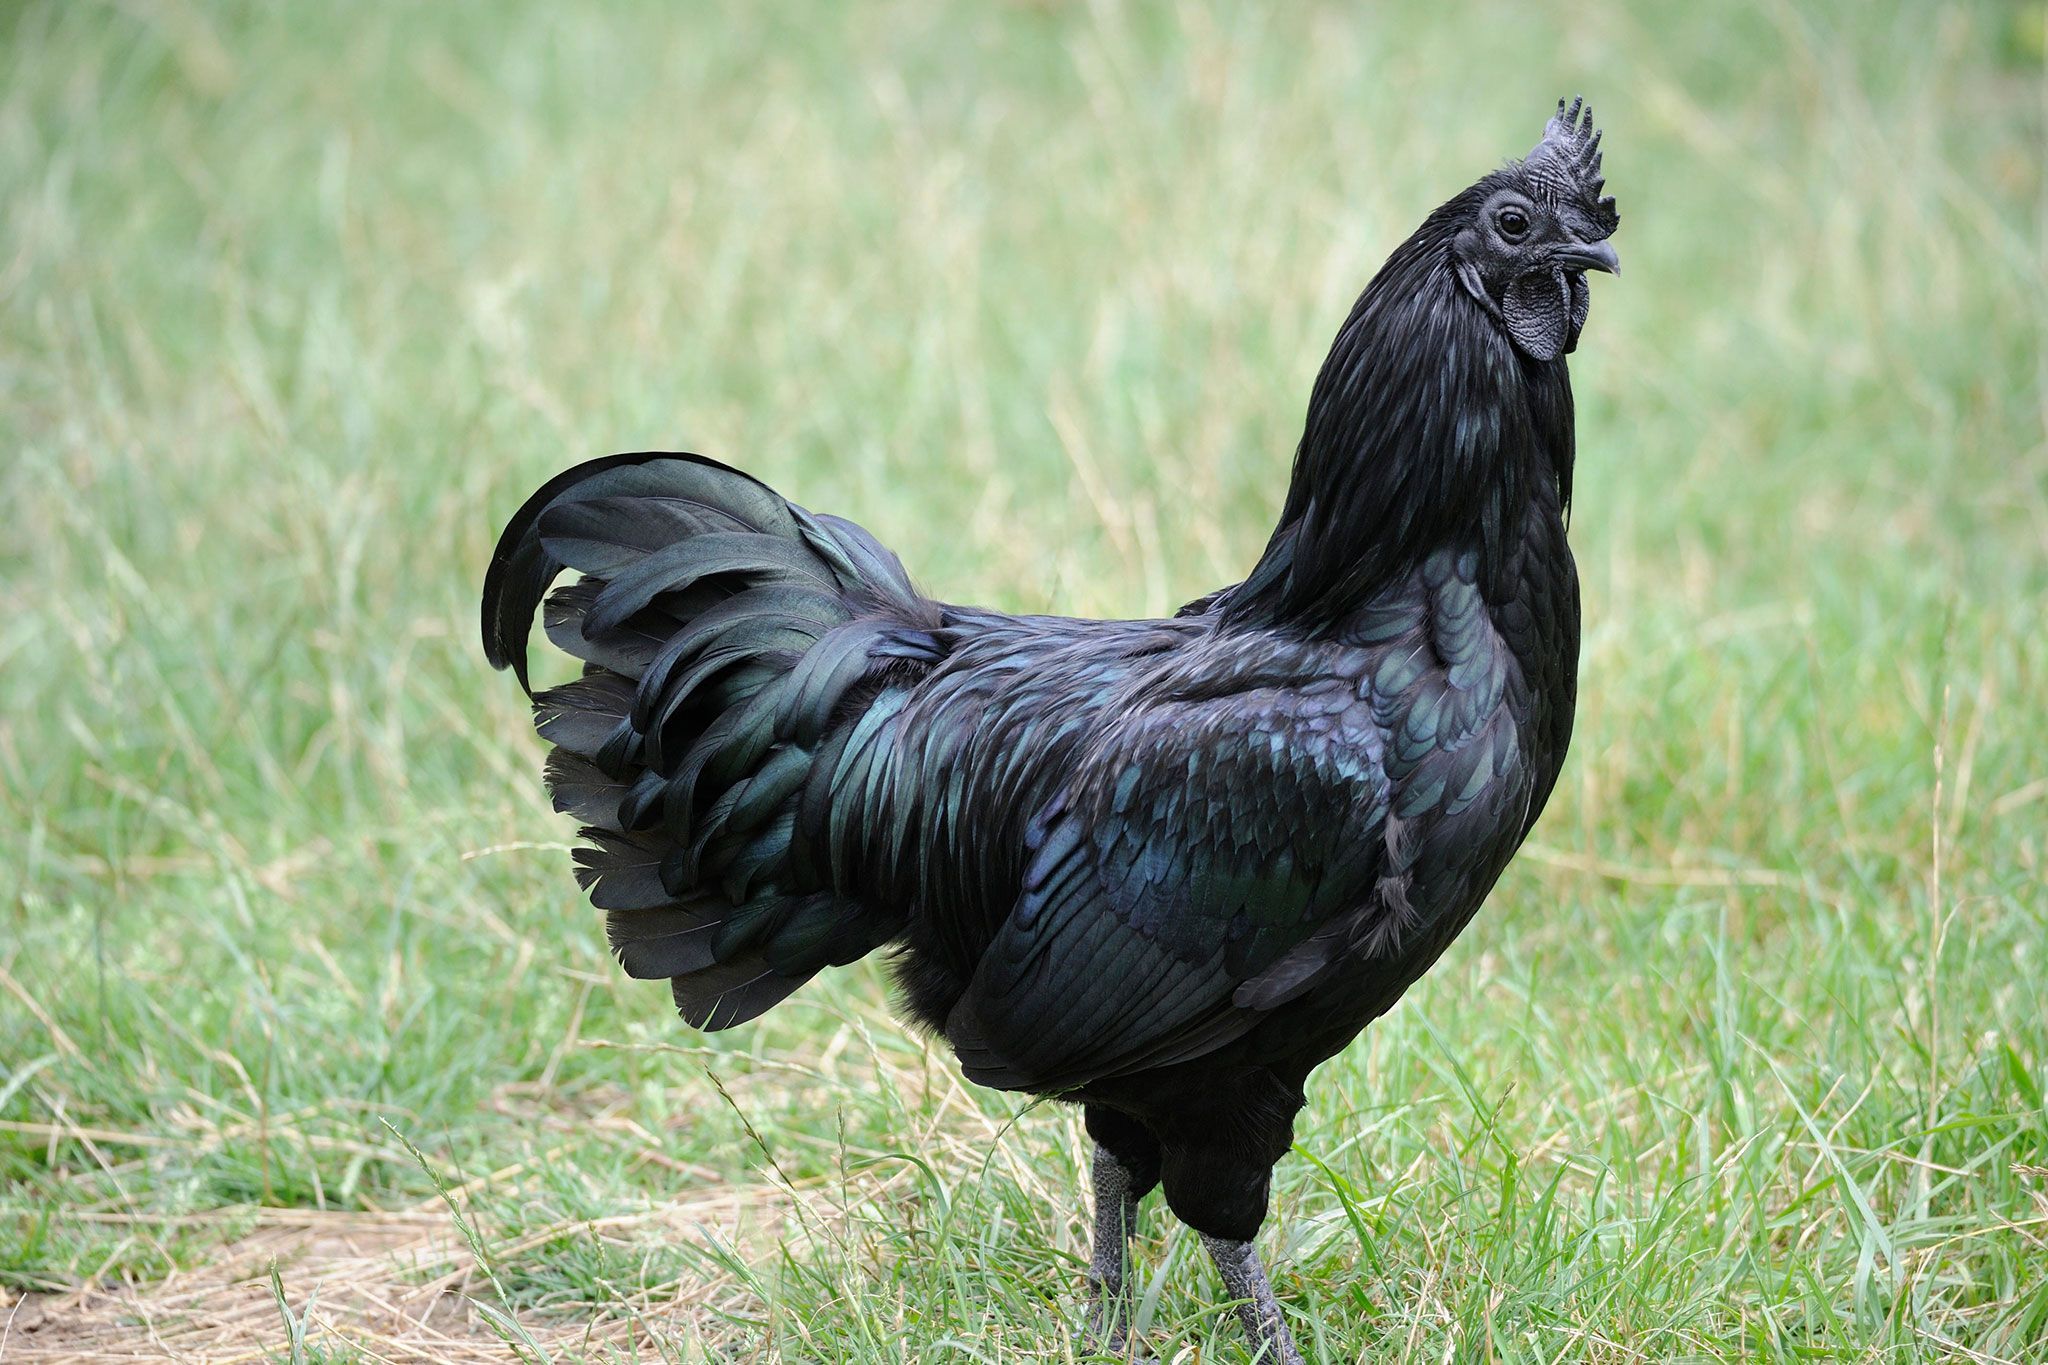 Erfenis Botsing bedrijf Waarom deze kip zelfs van binnen zwart is